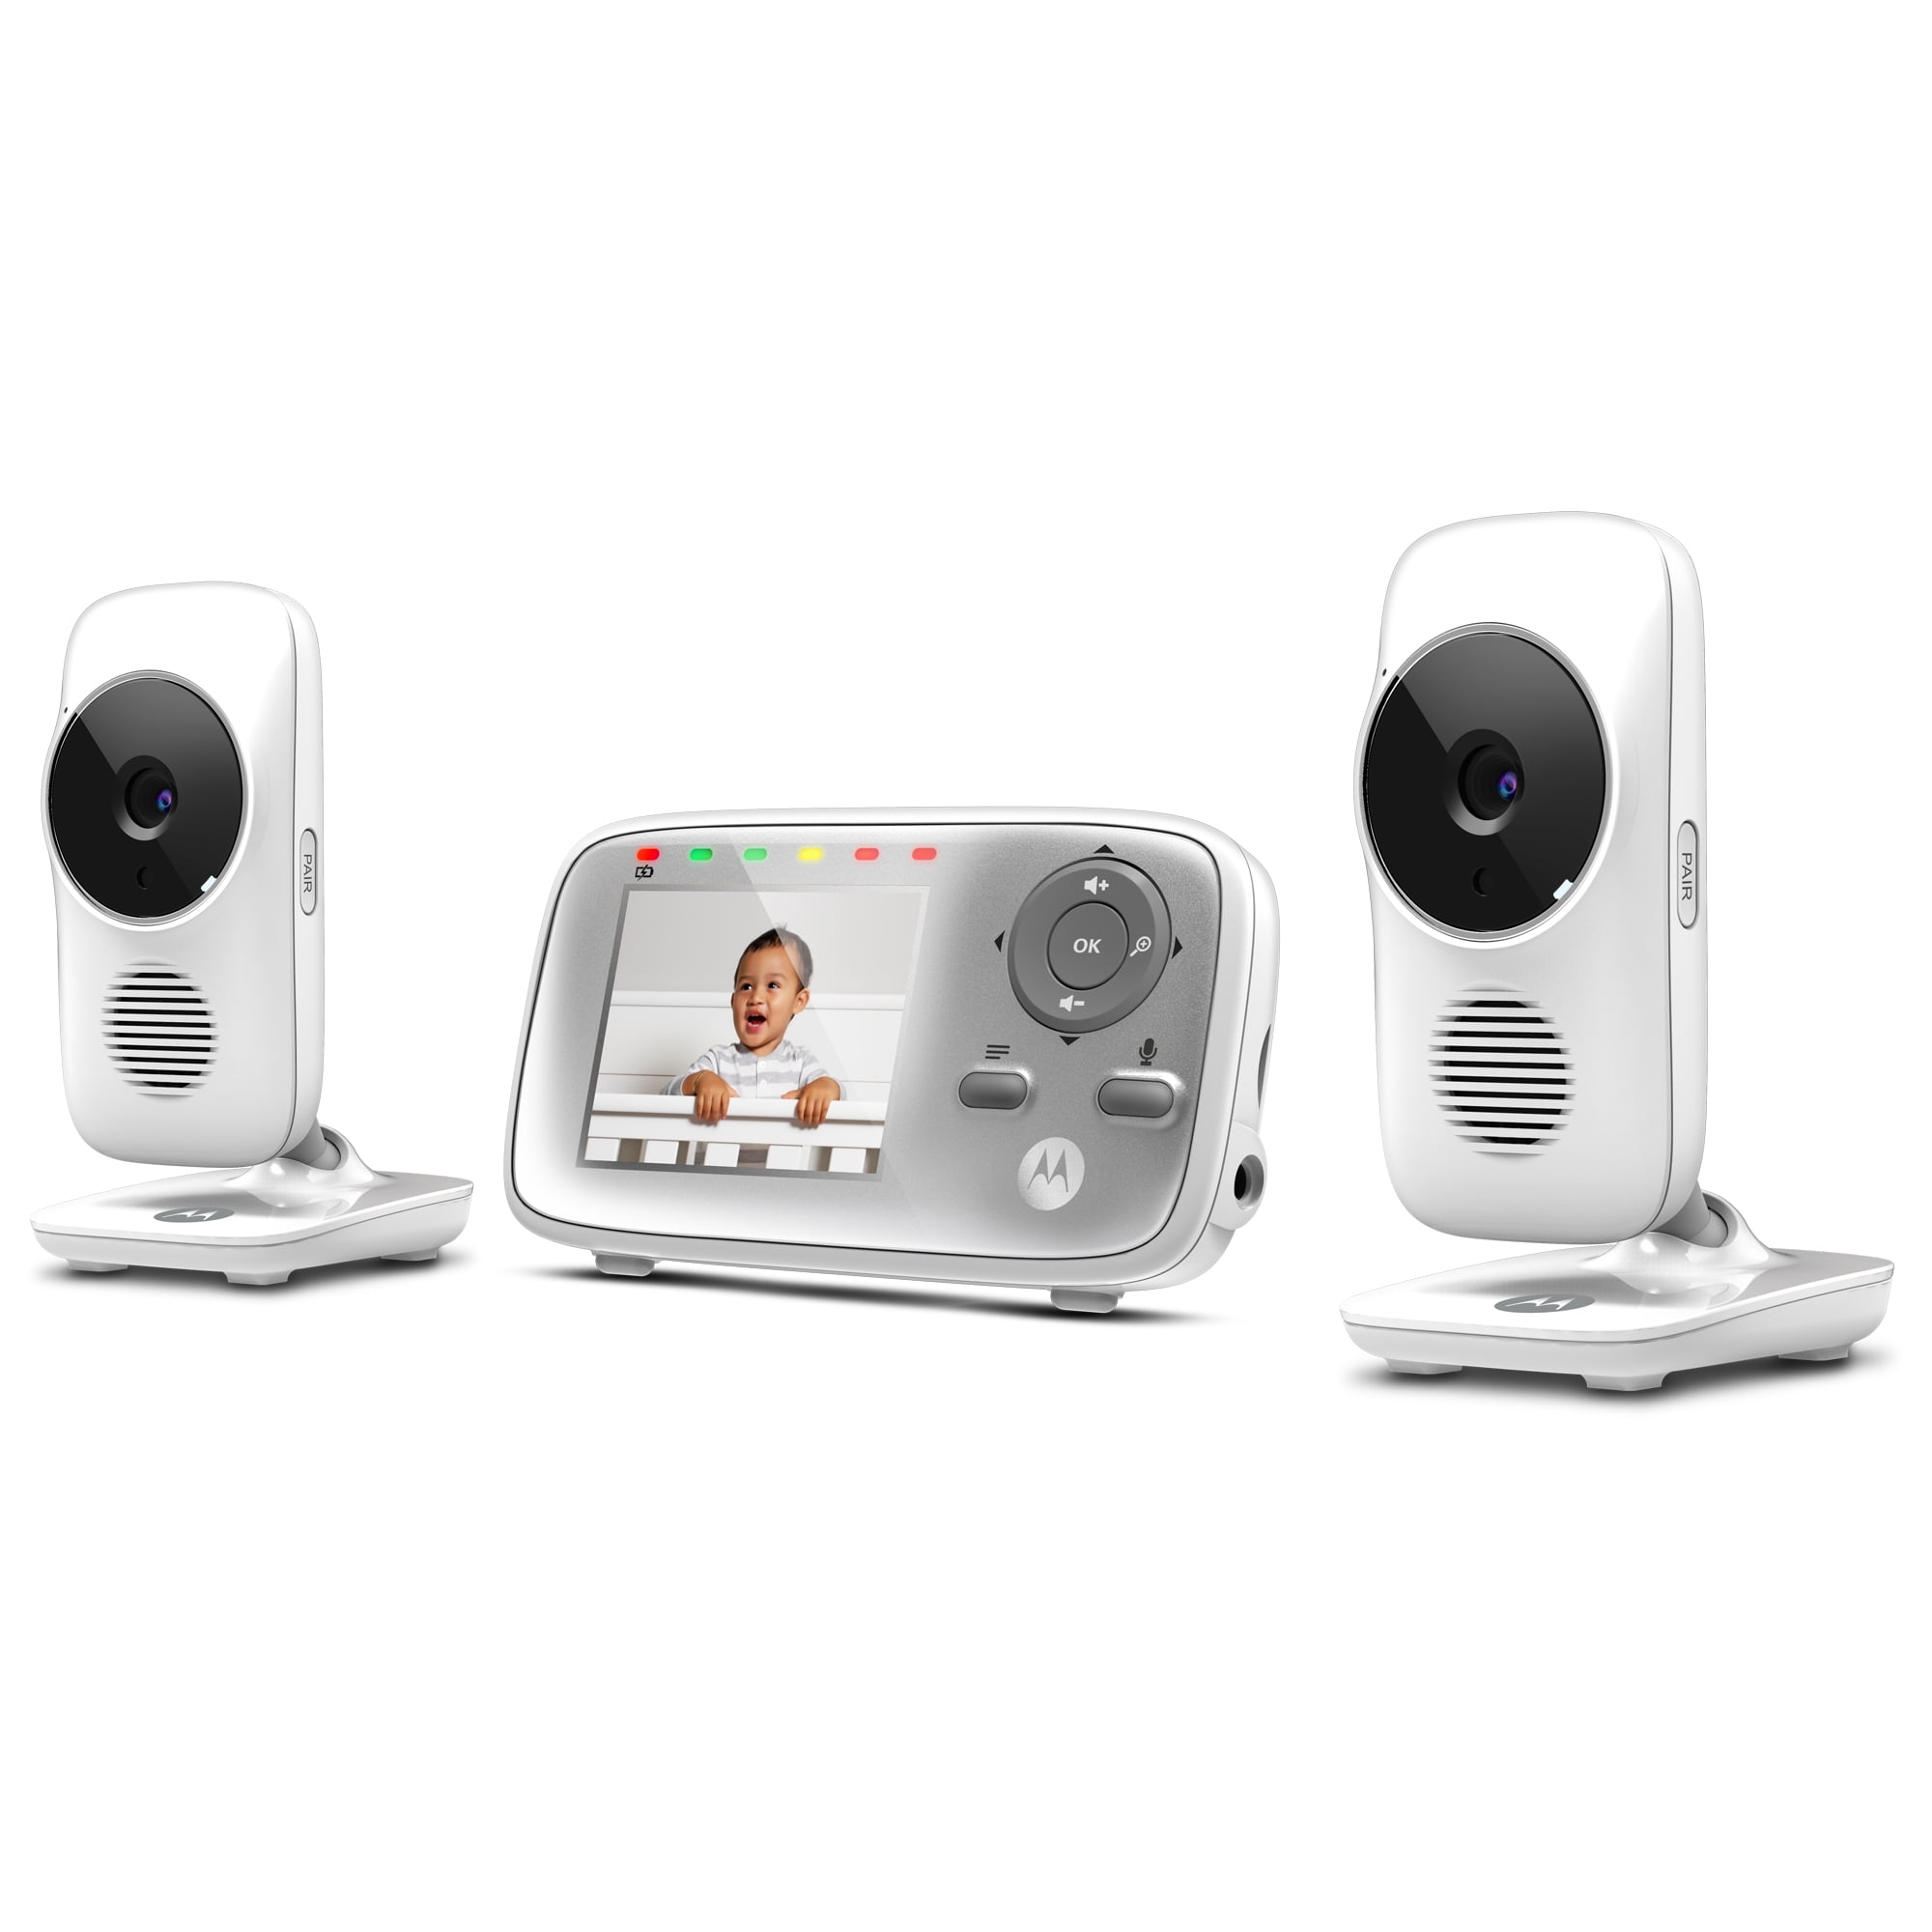 Almægtig I mængde offset Motorola MB483-2, Video Baby Monitor, 2 Cameras - Walmart.com